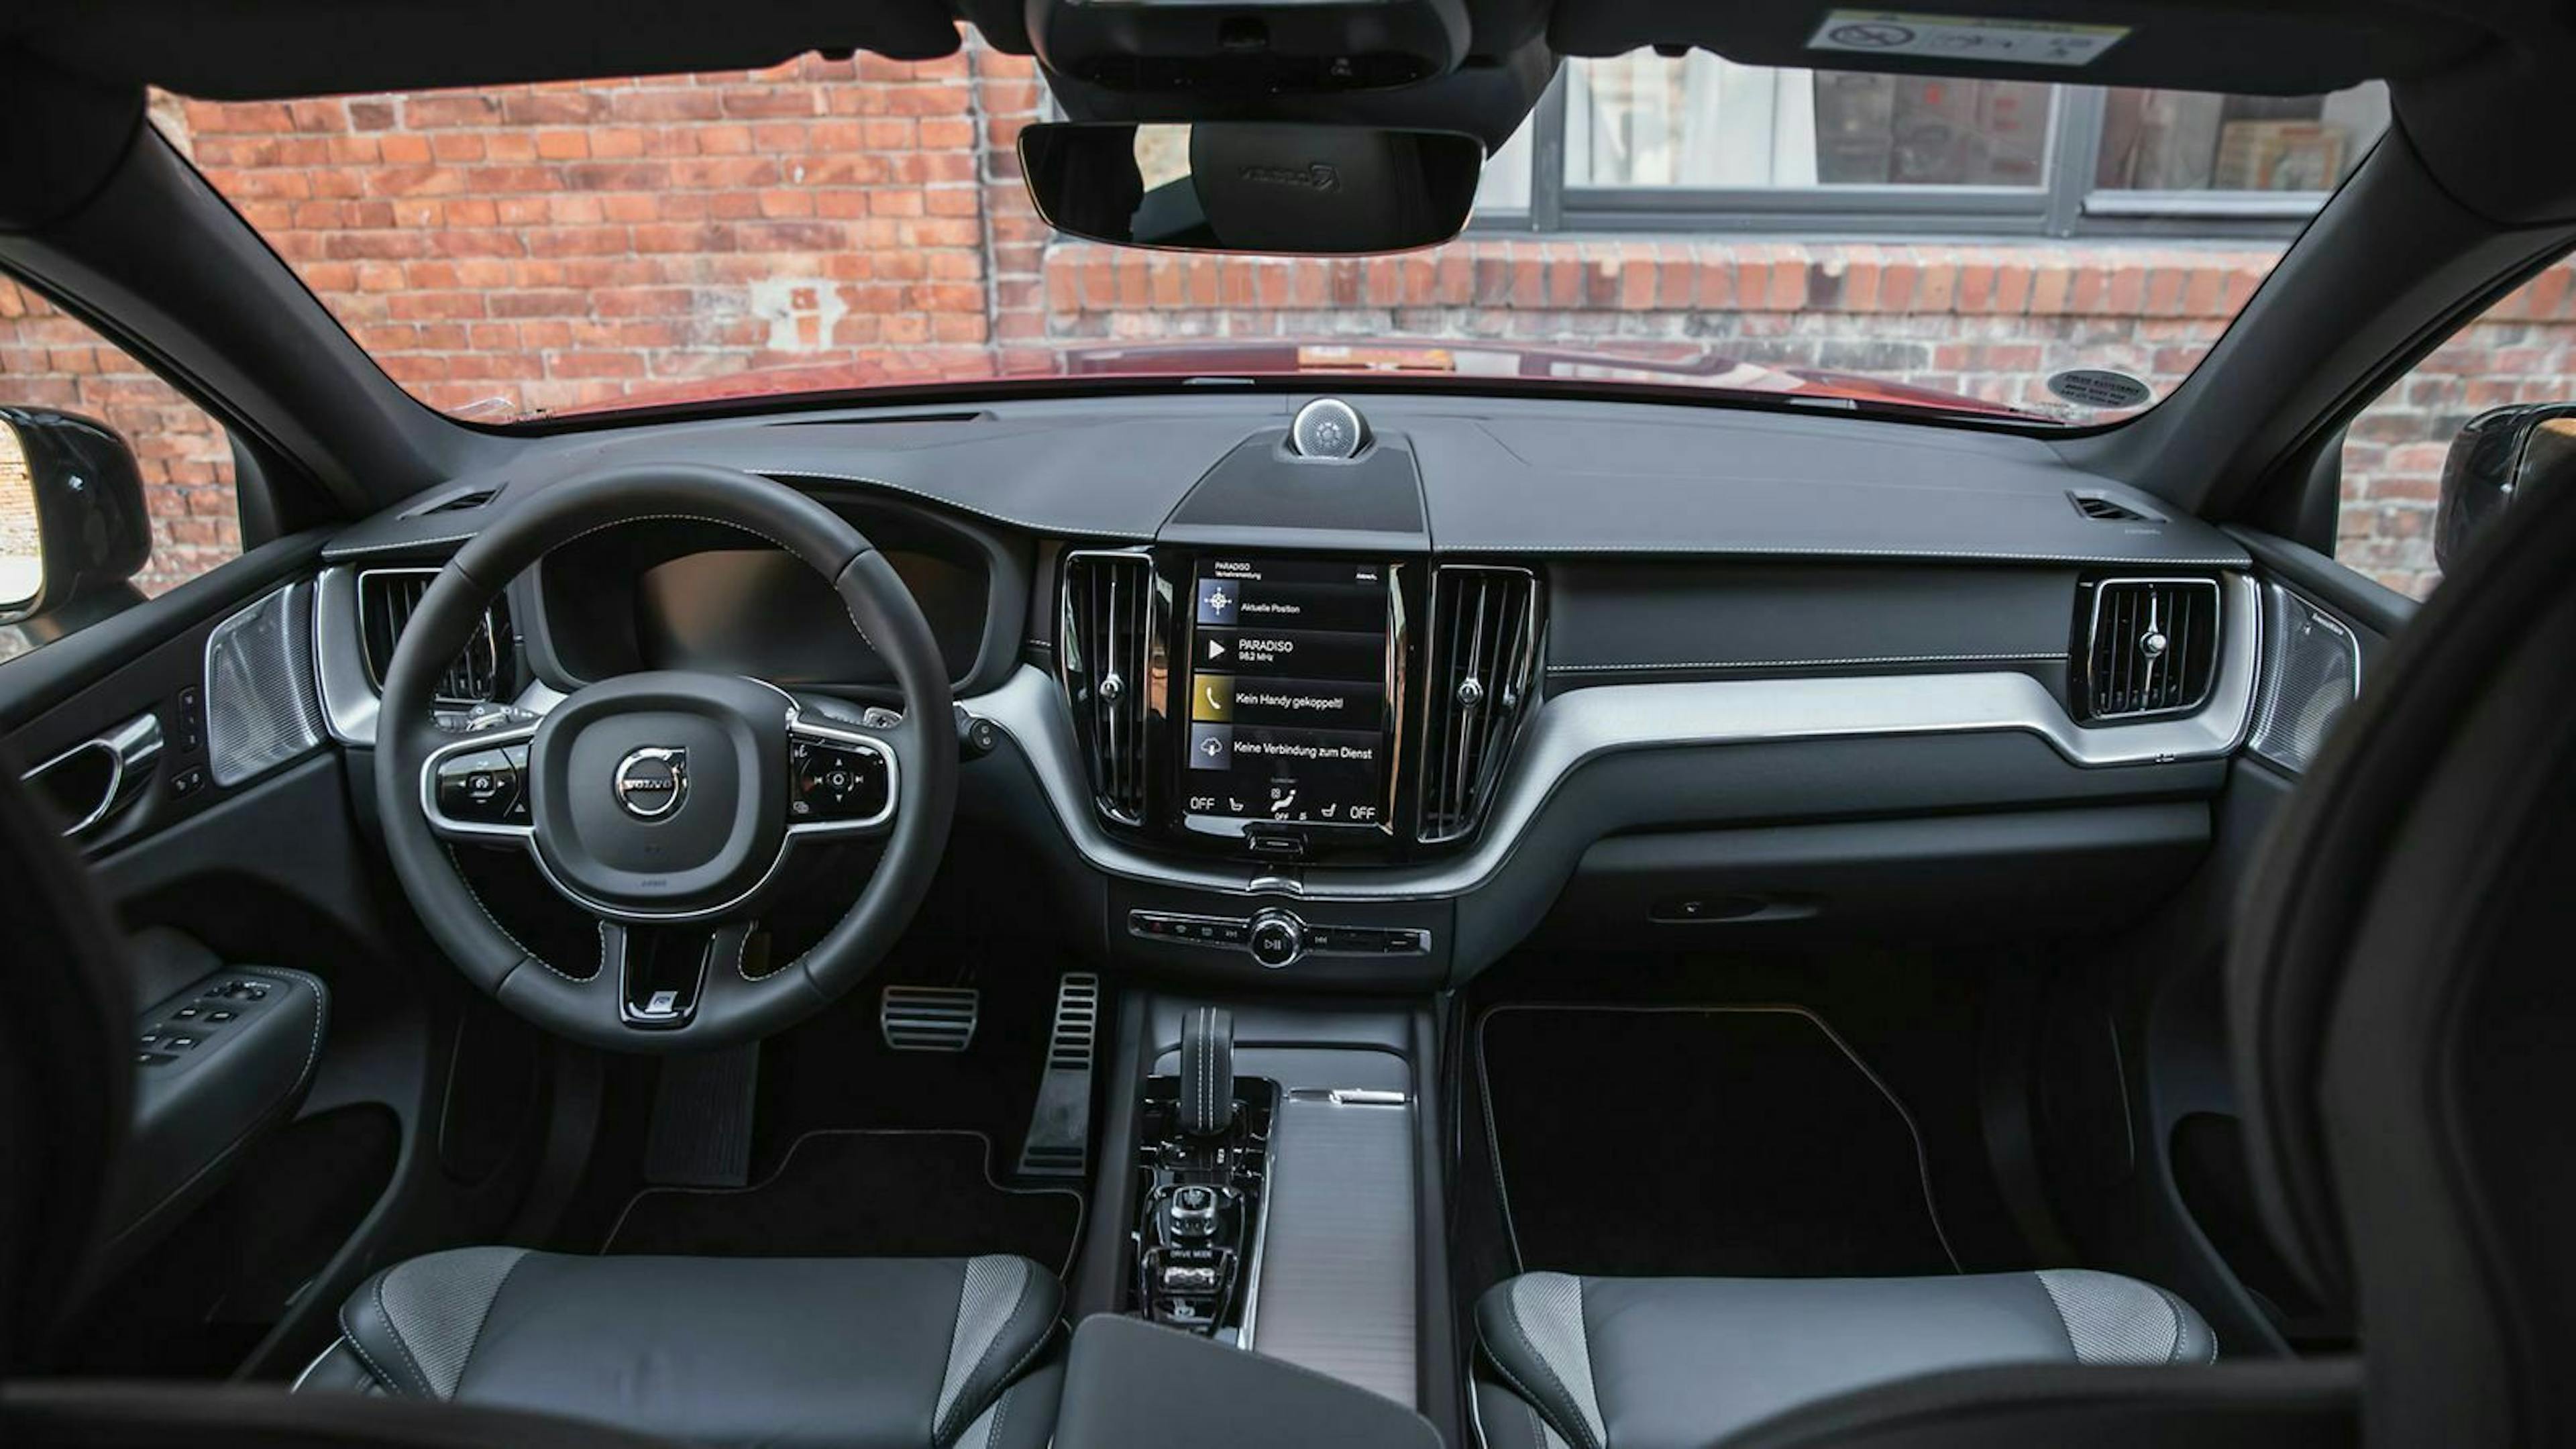 Hübsches Cockpit: Volvo setzt tolle Materialien ein und verarbeitet hochwertig